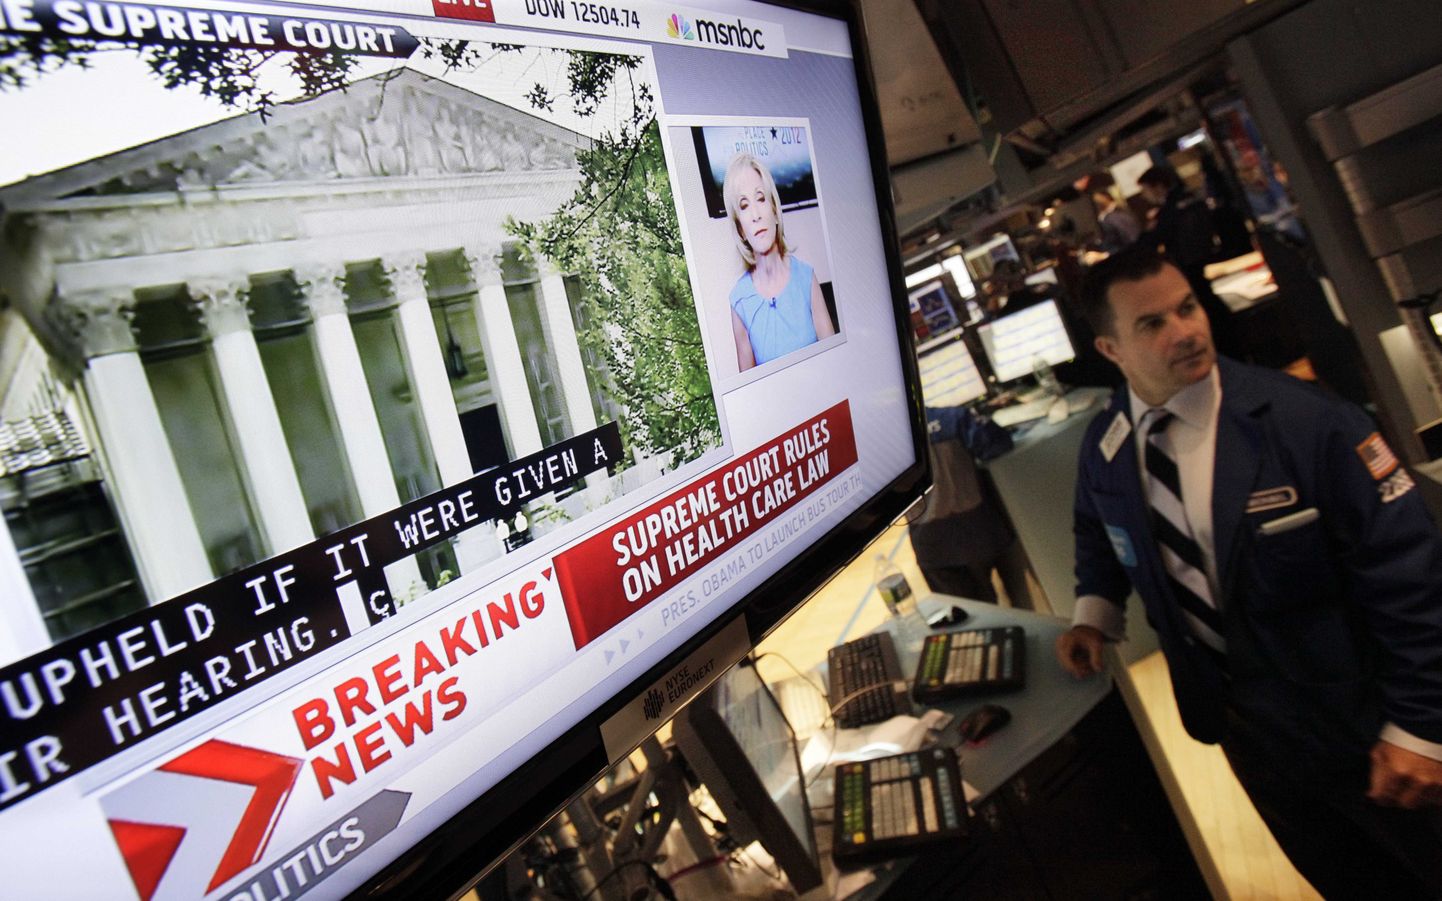 Televiisor New Yorgi börsil edastab uudist Ülemkohtu otsusest, millega Obama tervishoiureform jõusse jääb.